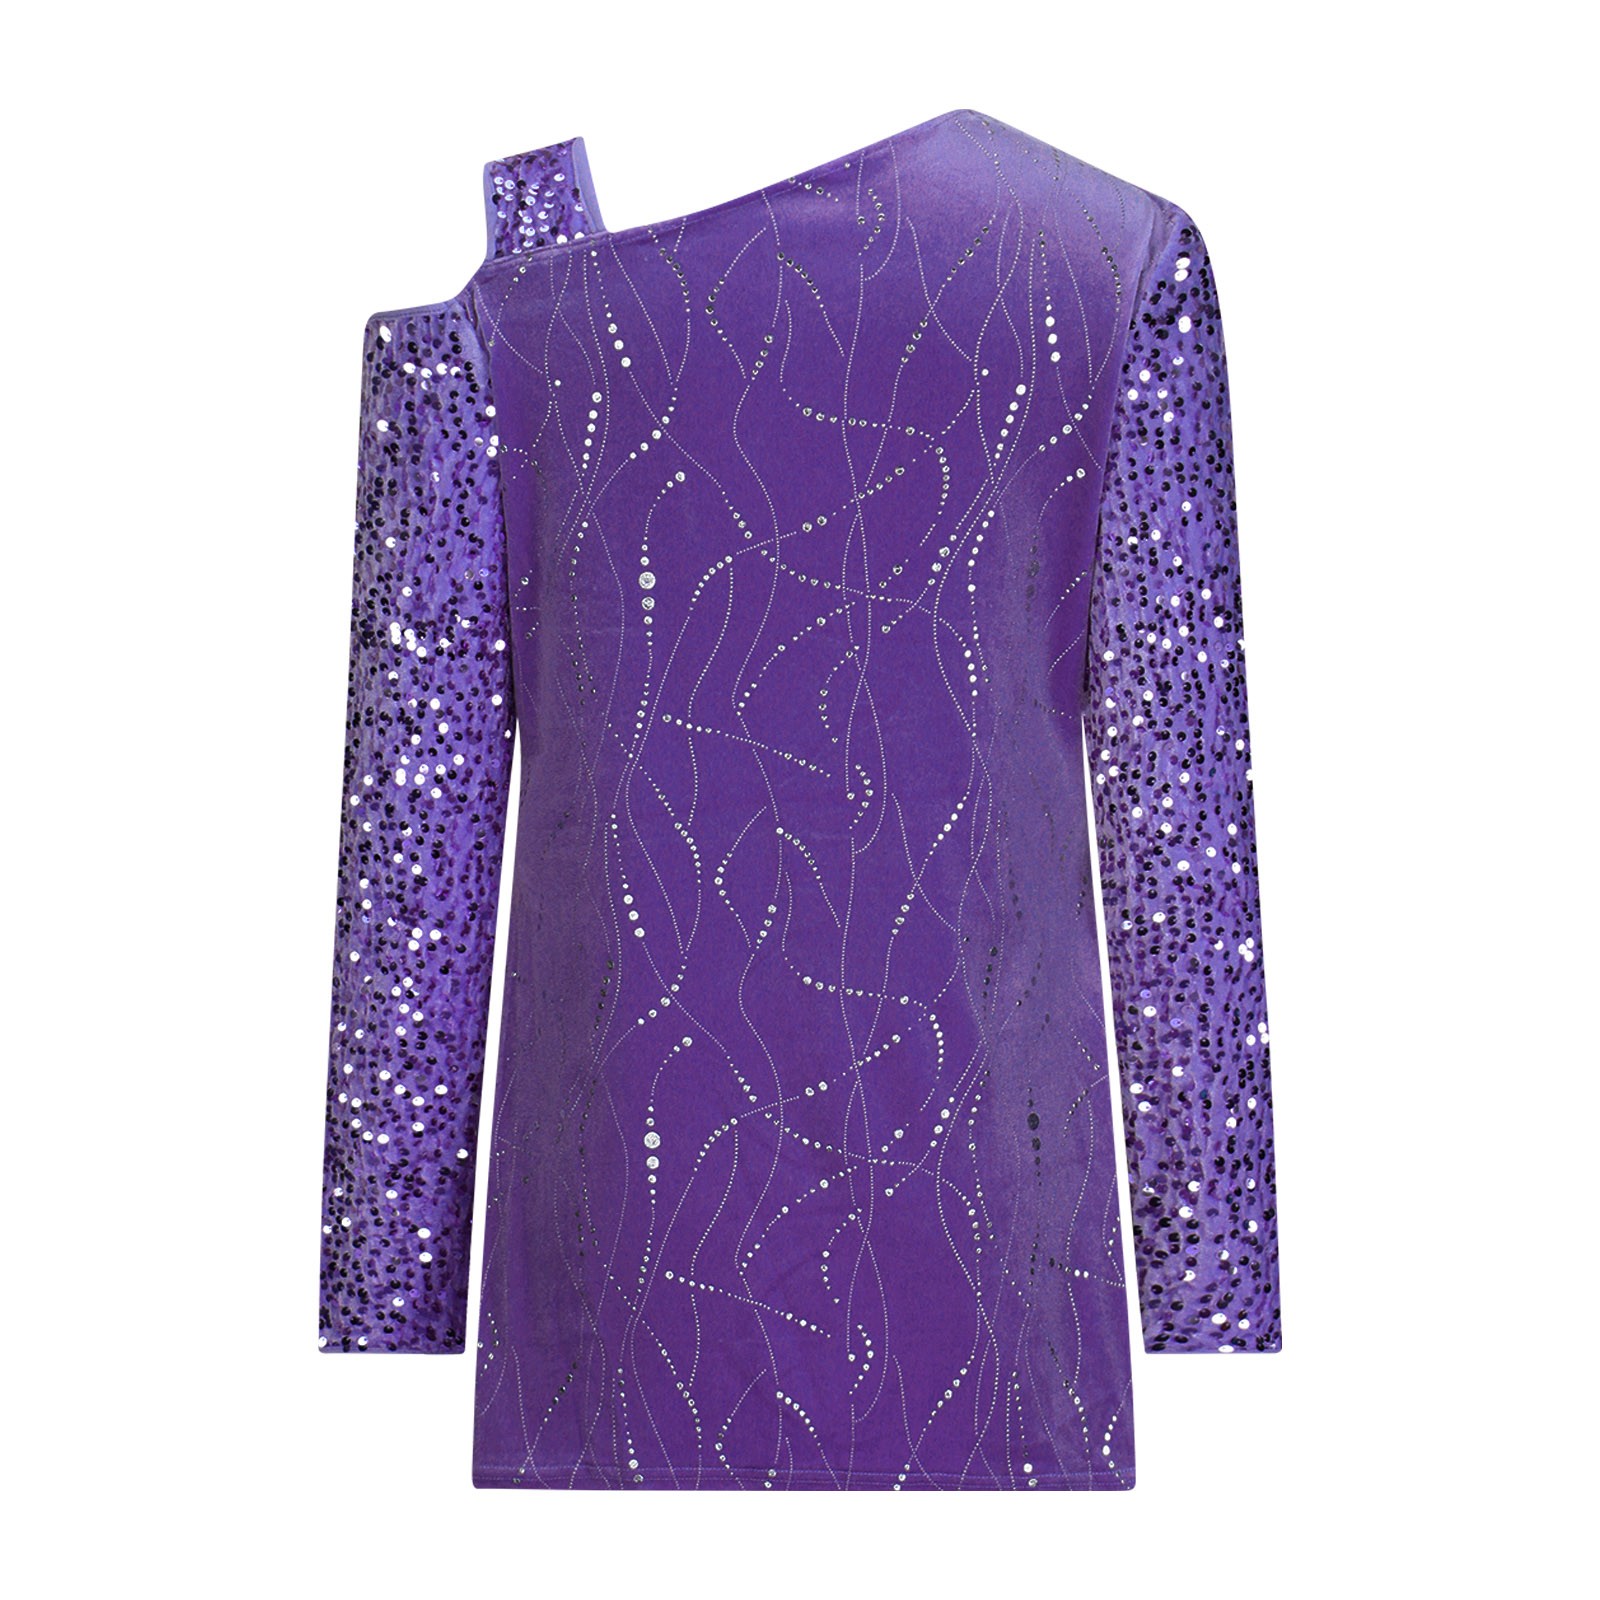 RYRJJ Women's Cold Shoulder Sequin Tops Long Sleeve Dressy Sparkly ...